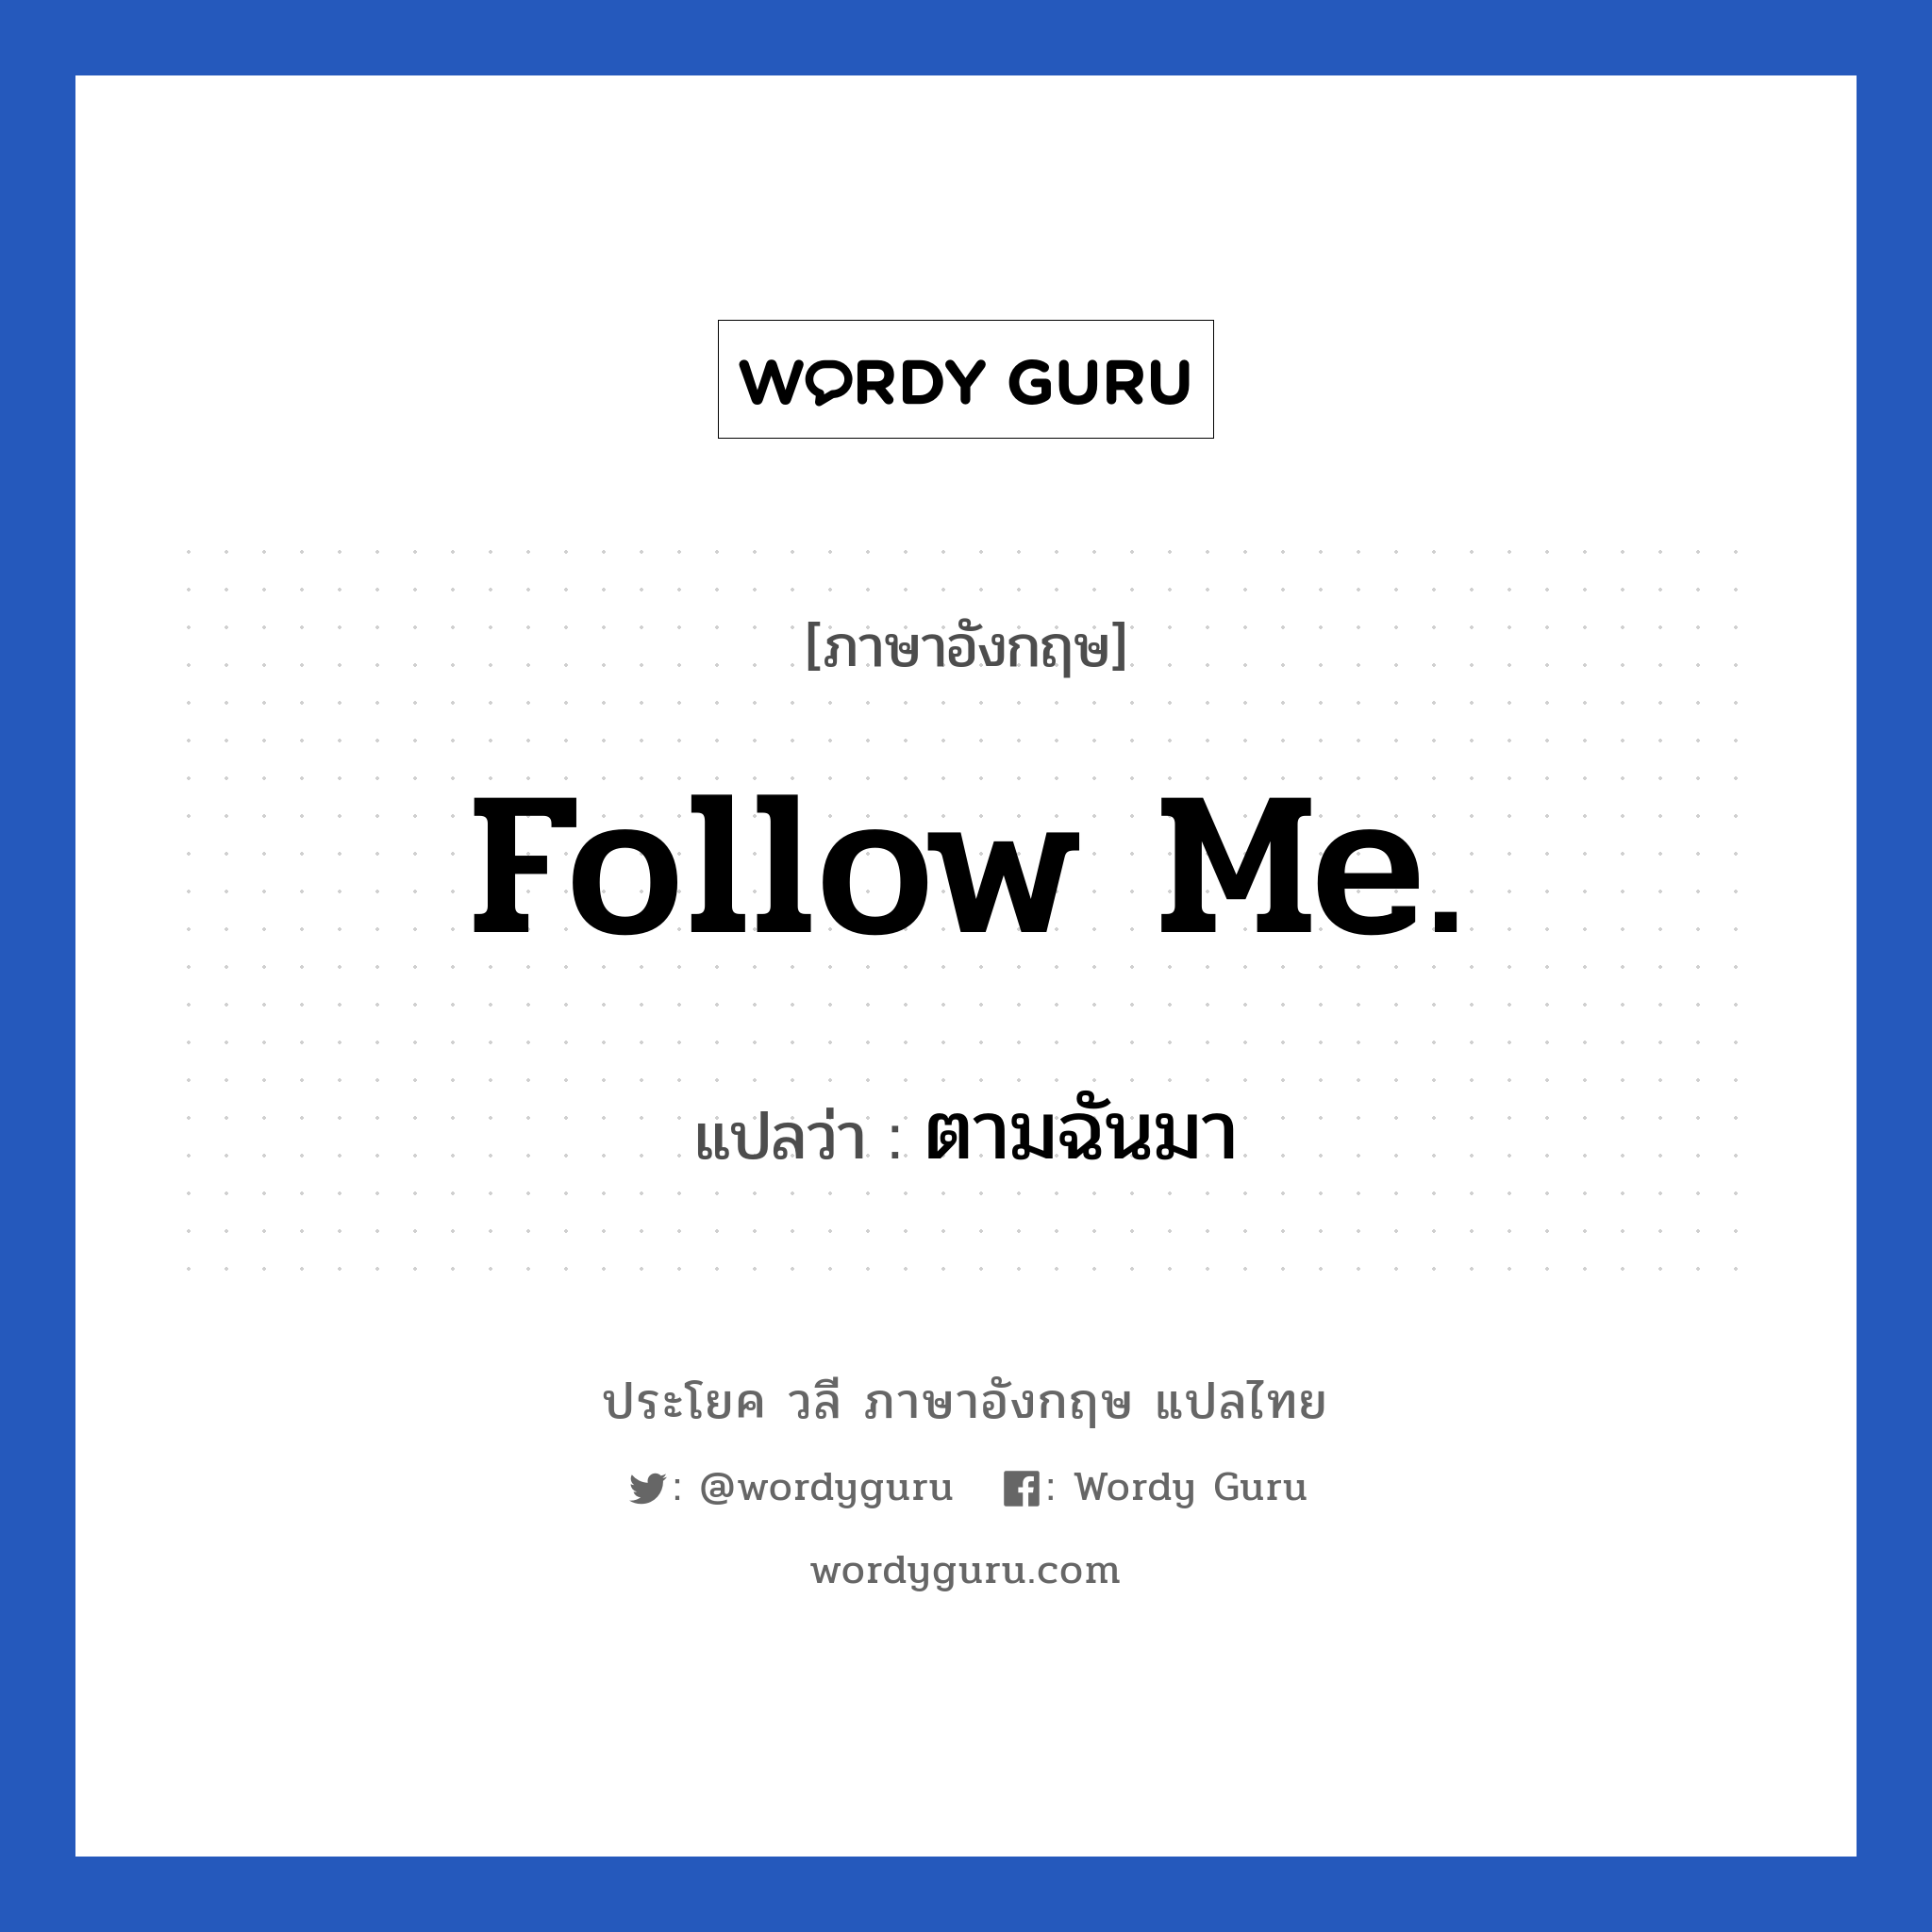 ตามฉันมา ภาษาอังกฤษ?, วลีภาษาอังกฤษ ตามฉันมา แปลว่า Follow me.